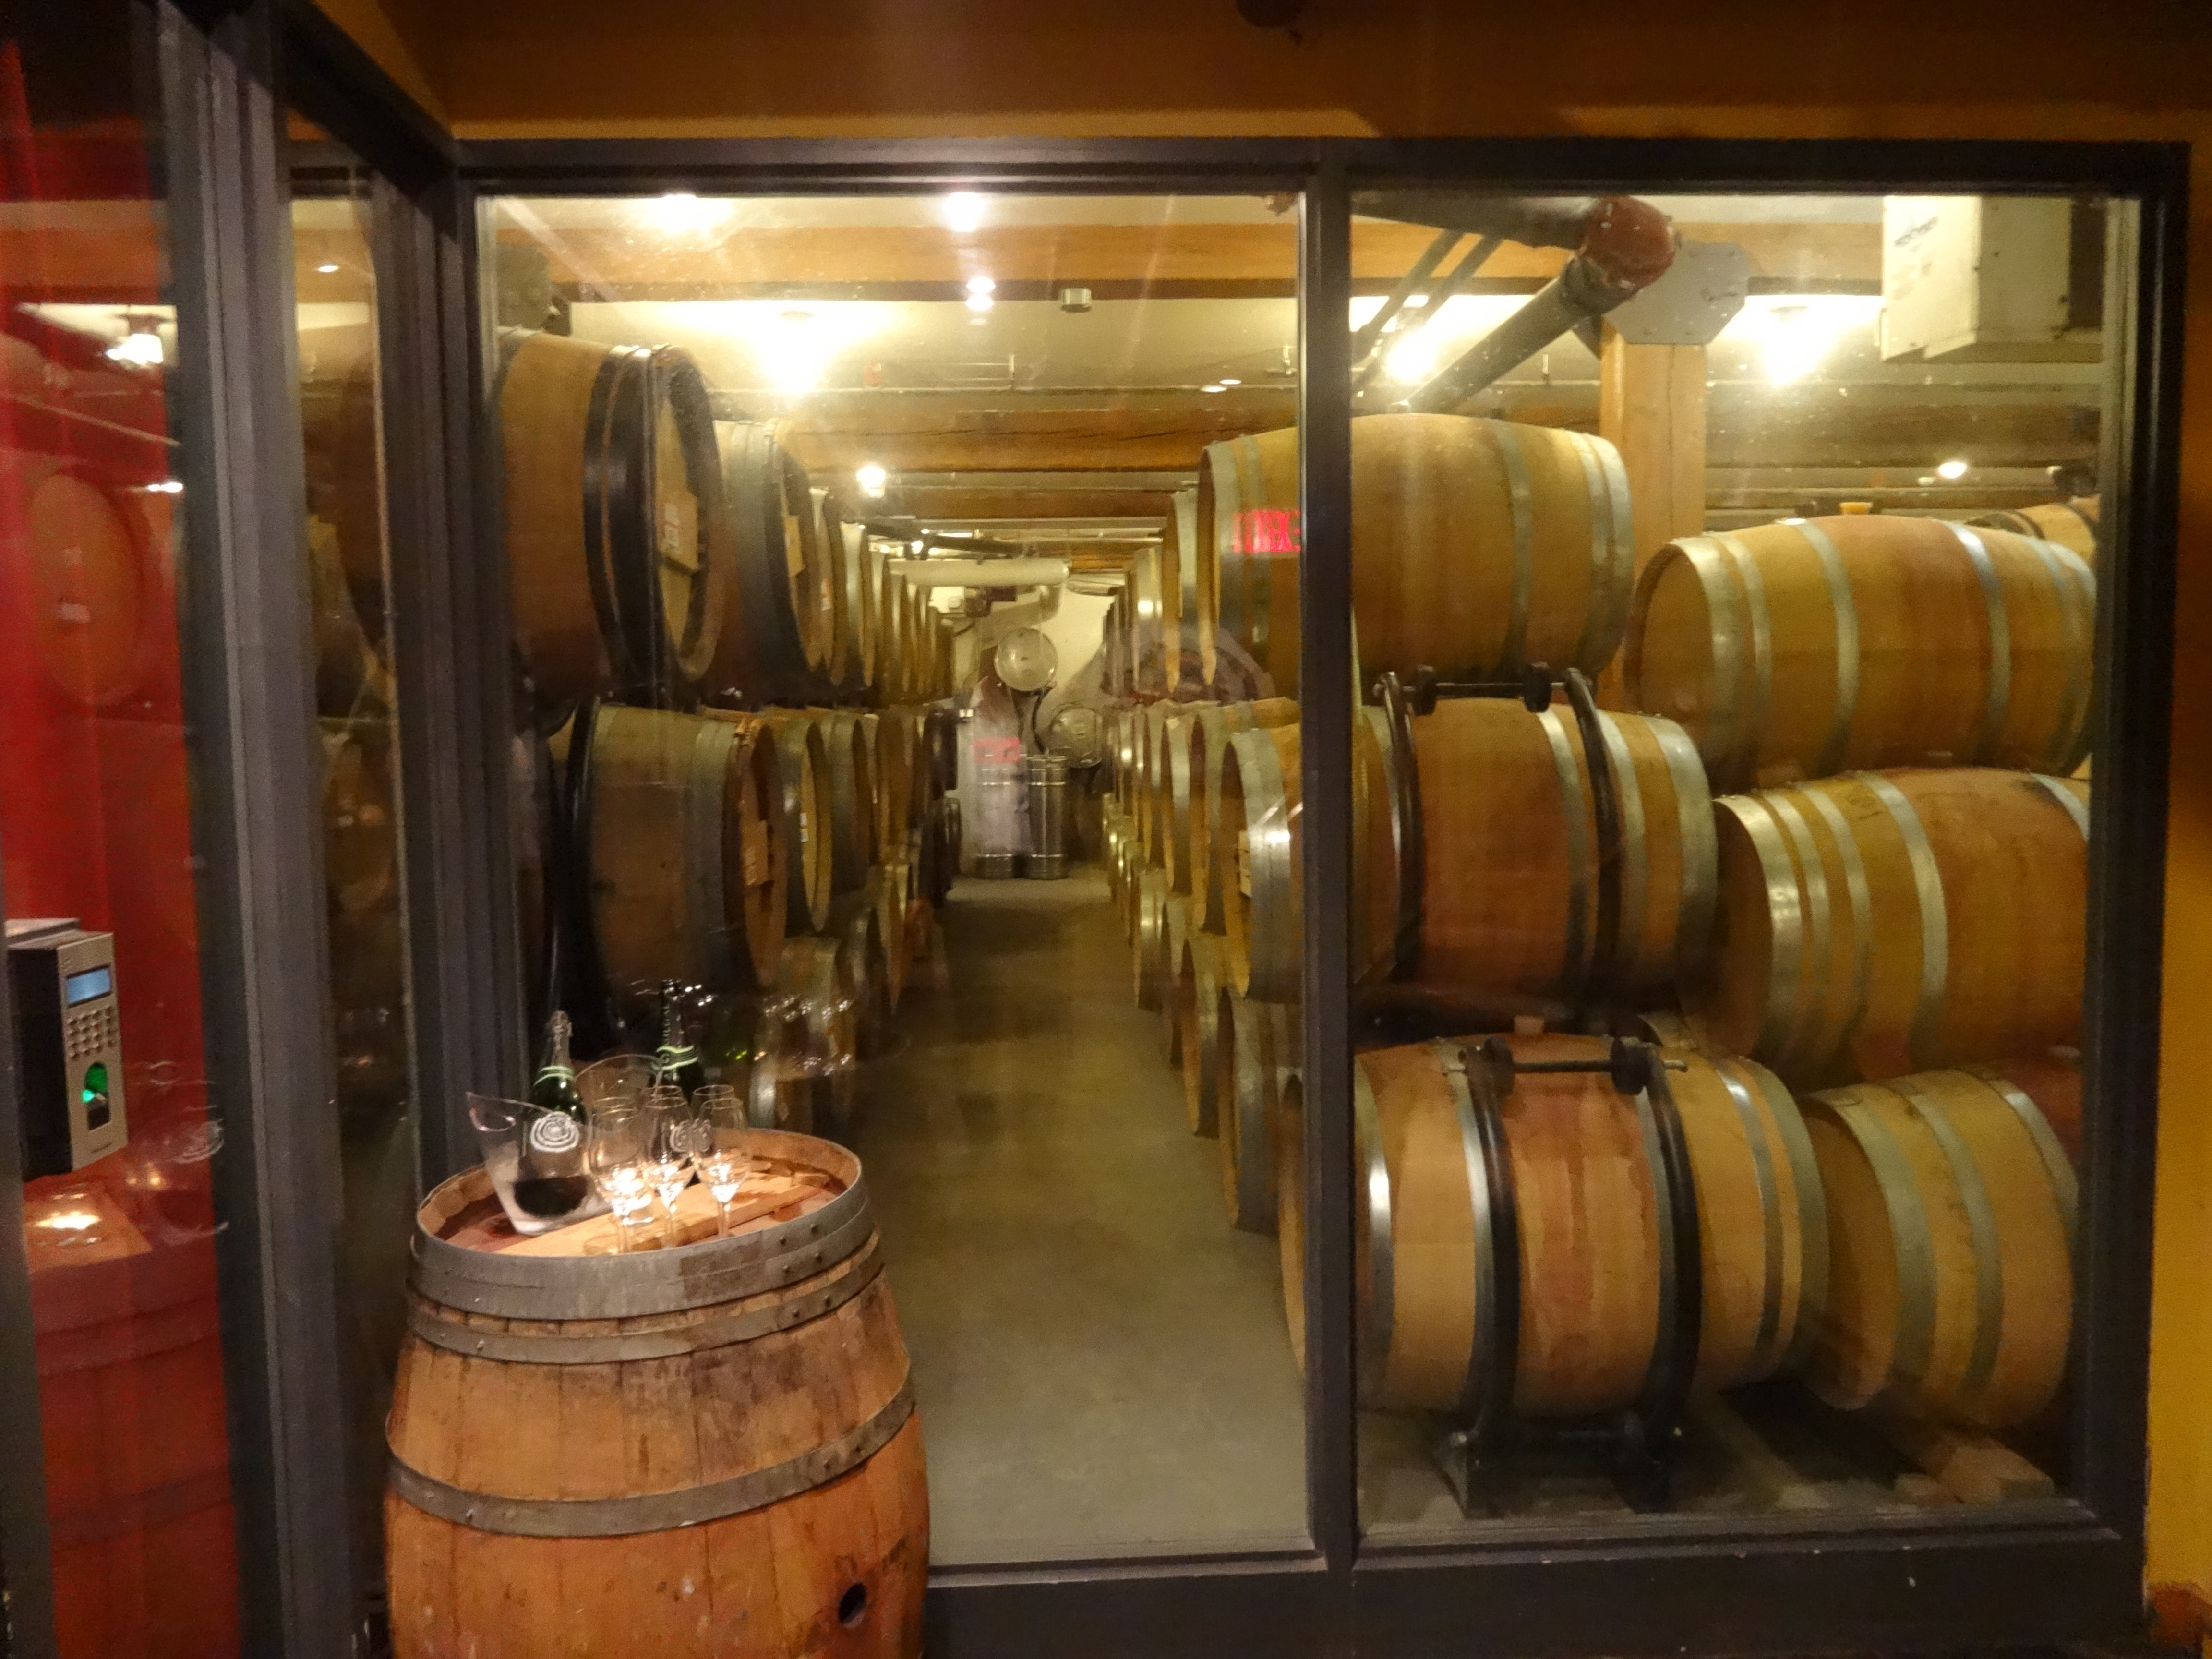 City Winery casks